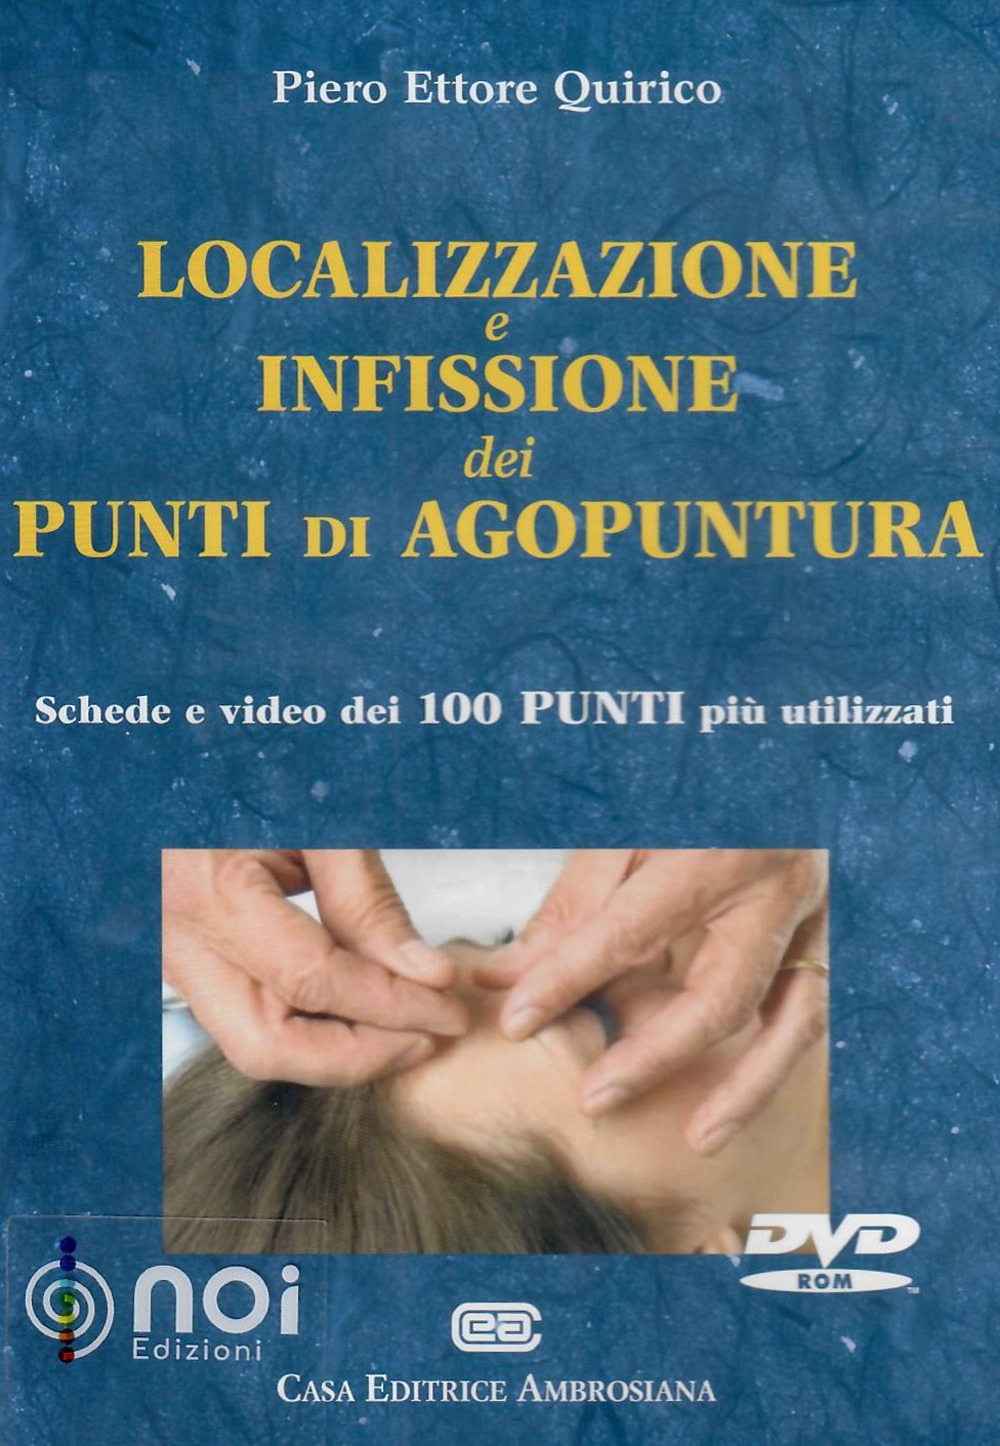 Image of Localizzazione e infissione dei punti di agopuntura. DVD-ROM